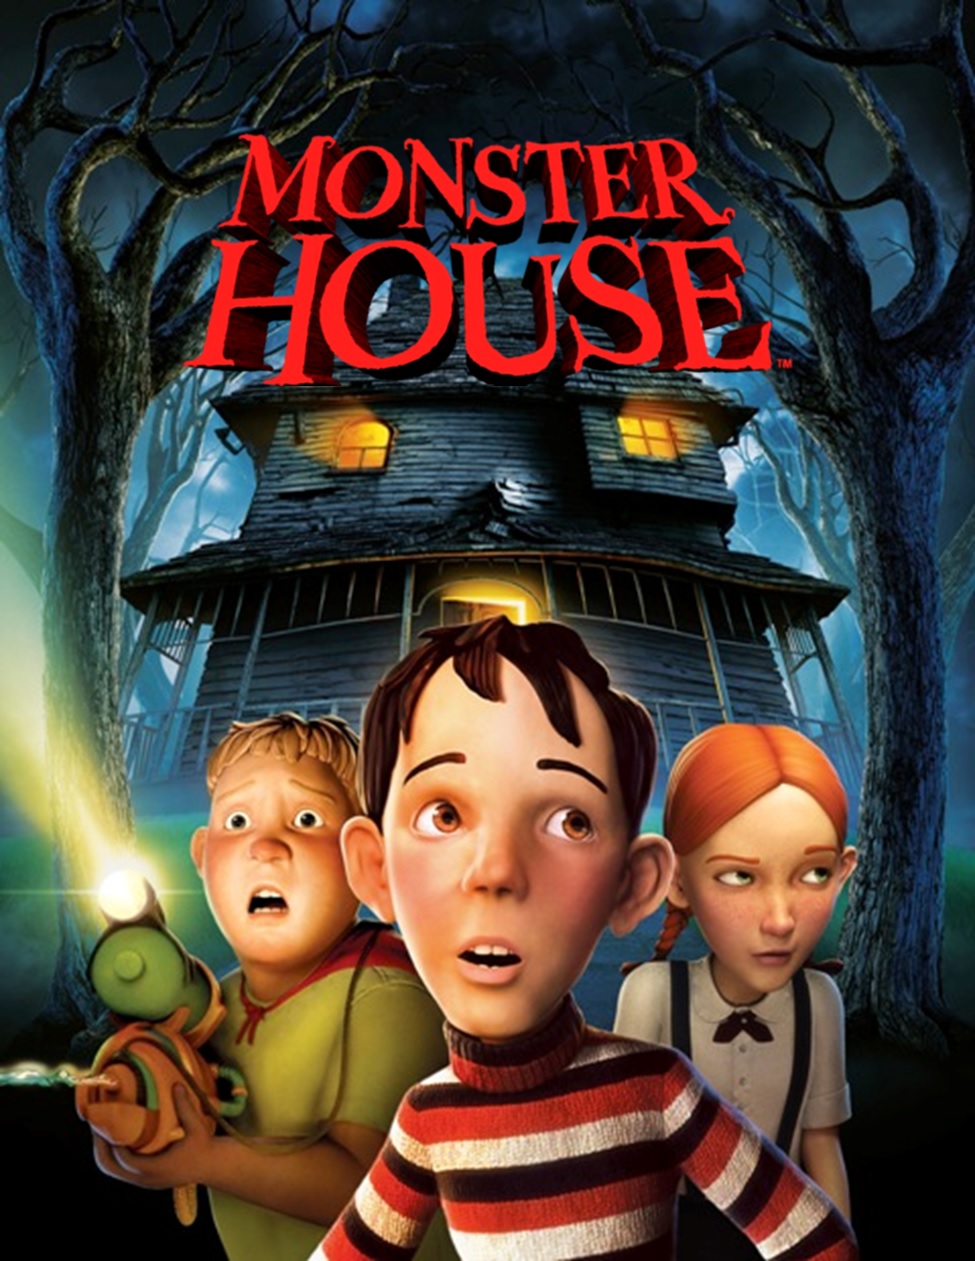 "Monster House"